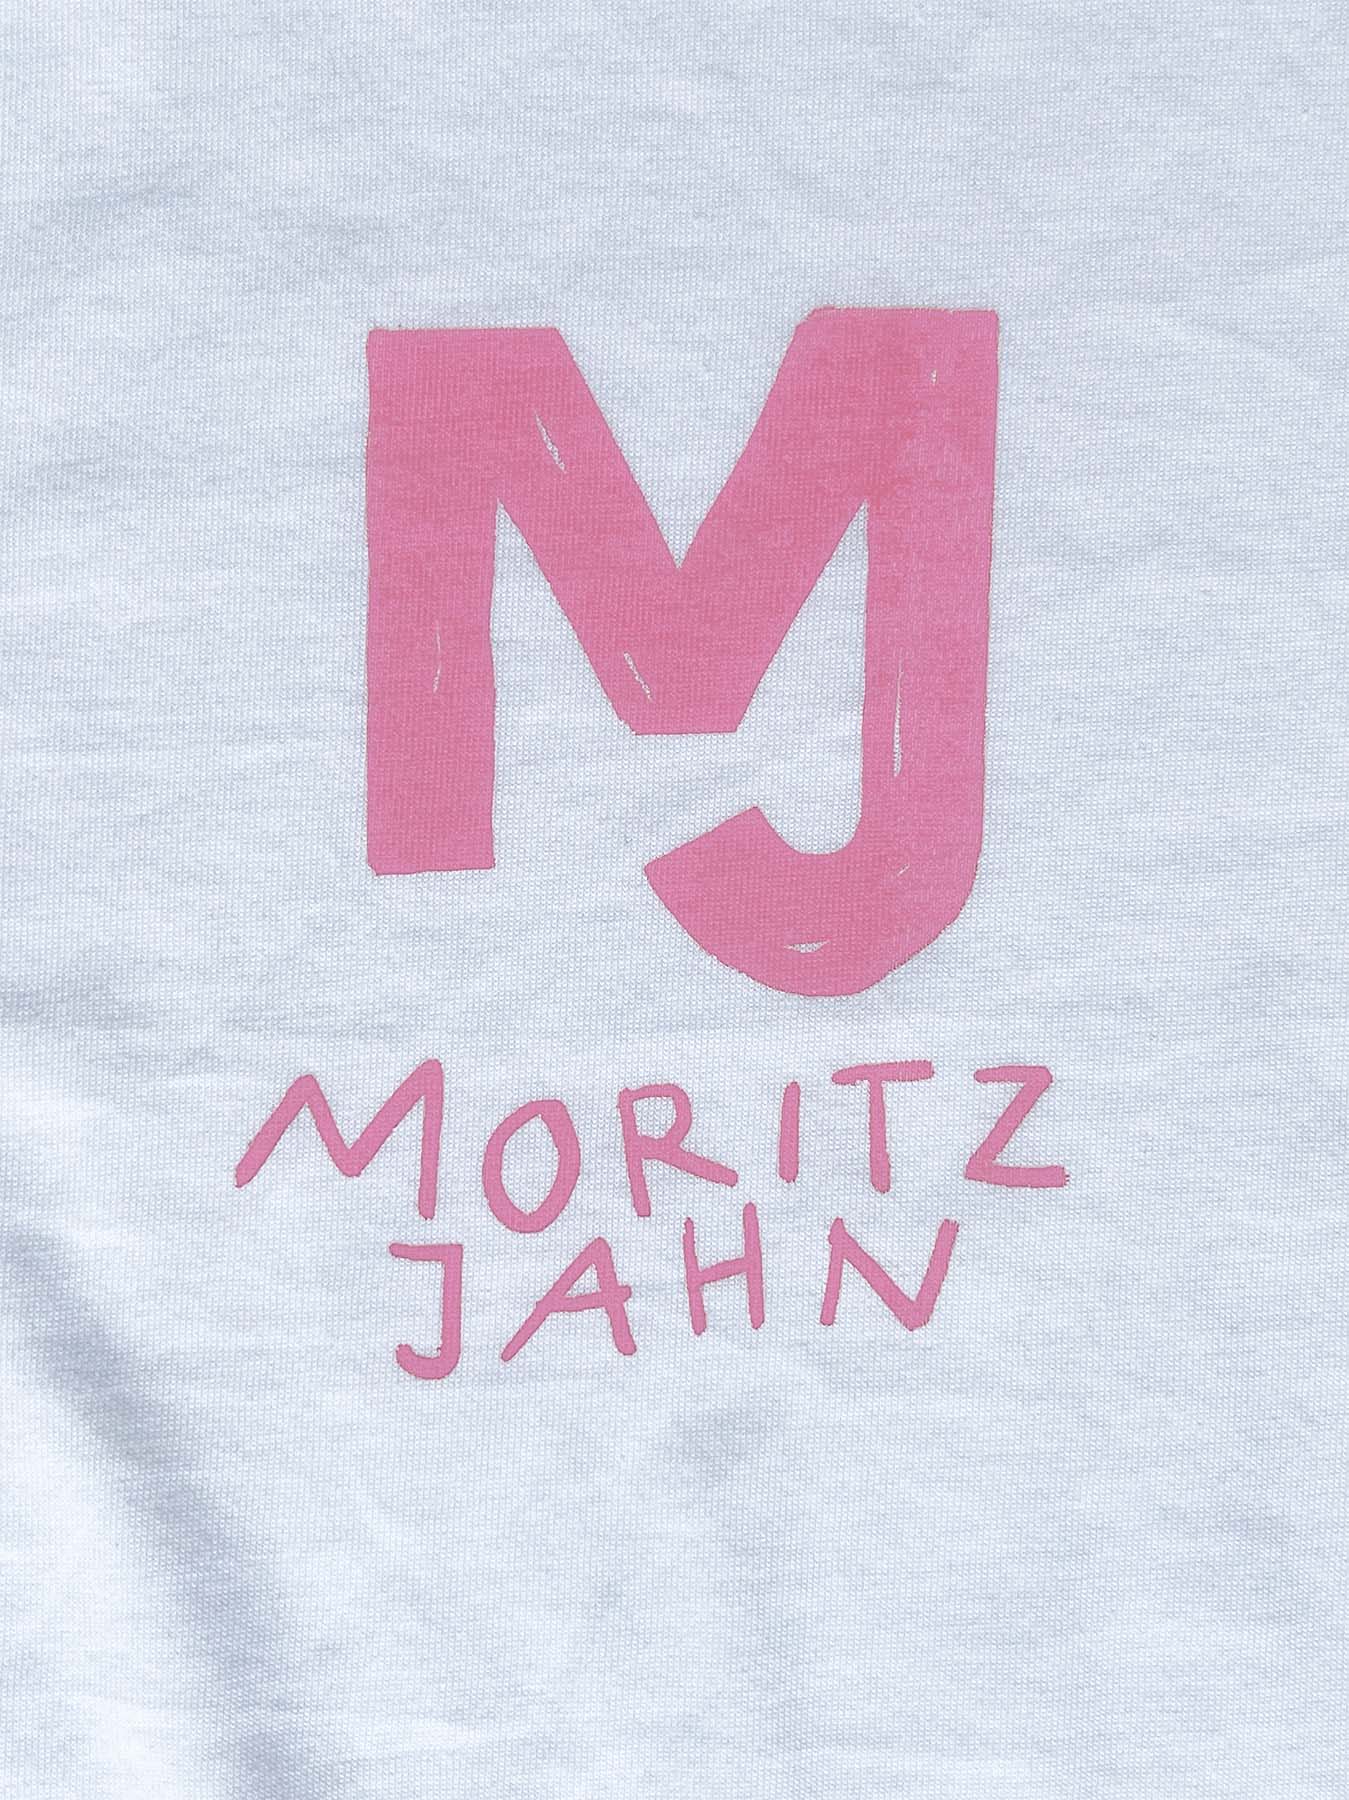 Moritz Jahn Limitiertes Soliloquy Shirt Siebdruck T-Shirt pink